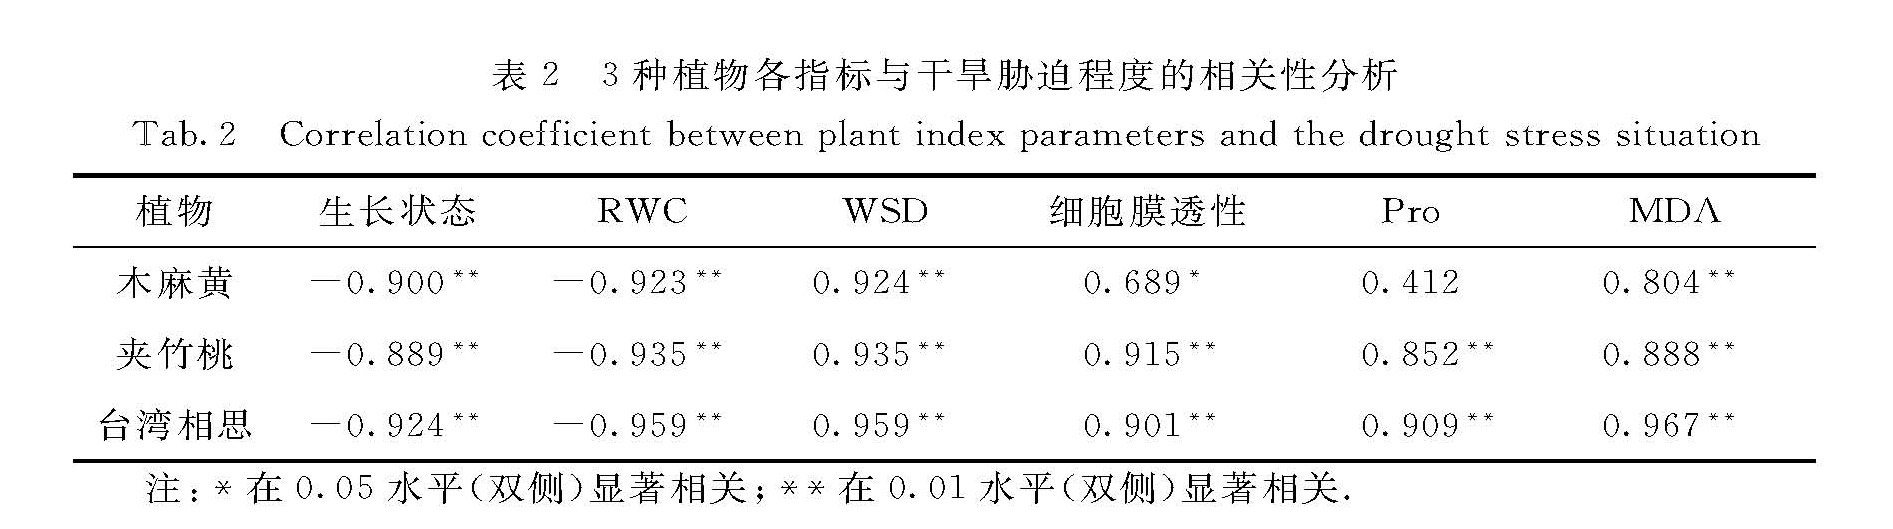 表2 3种植物各指标与干旱胁迫程度的相关性分析<br/>Tab.2 Correlation coefficient between plant index parameters and the drought stress situation